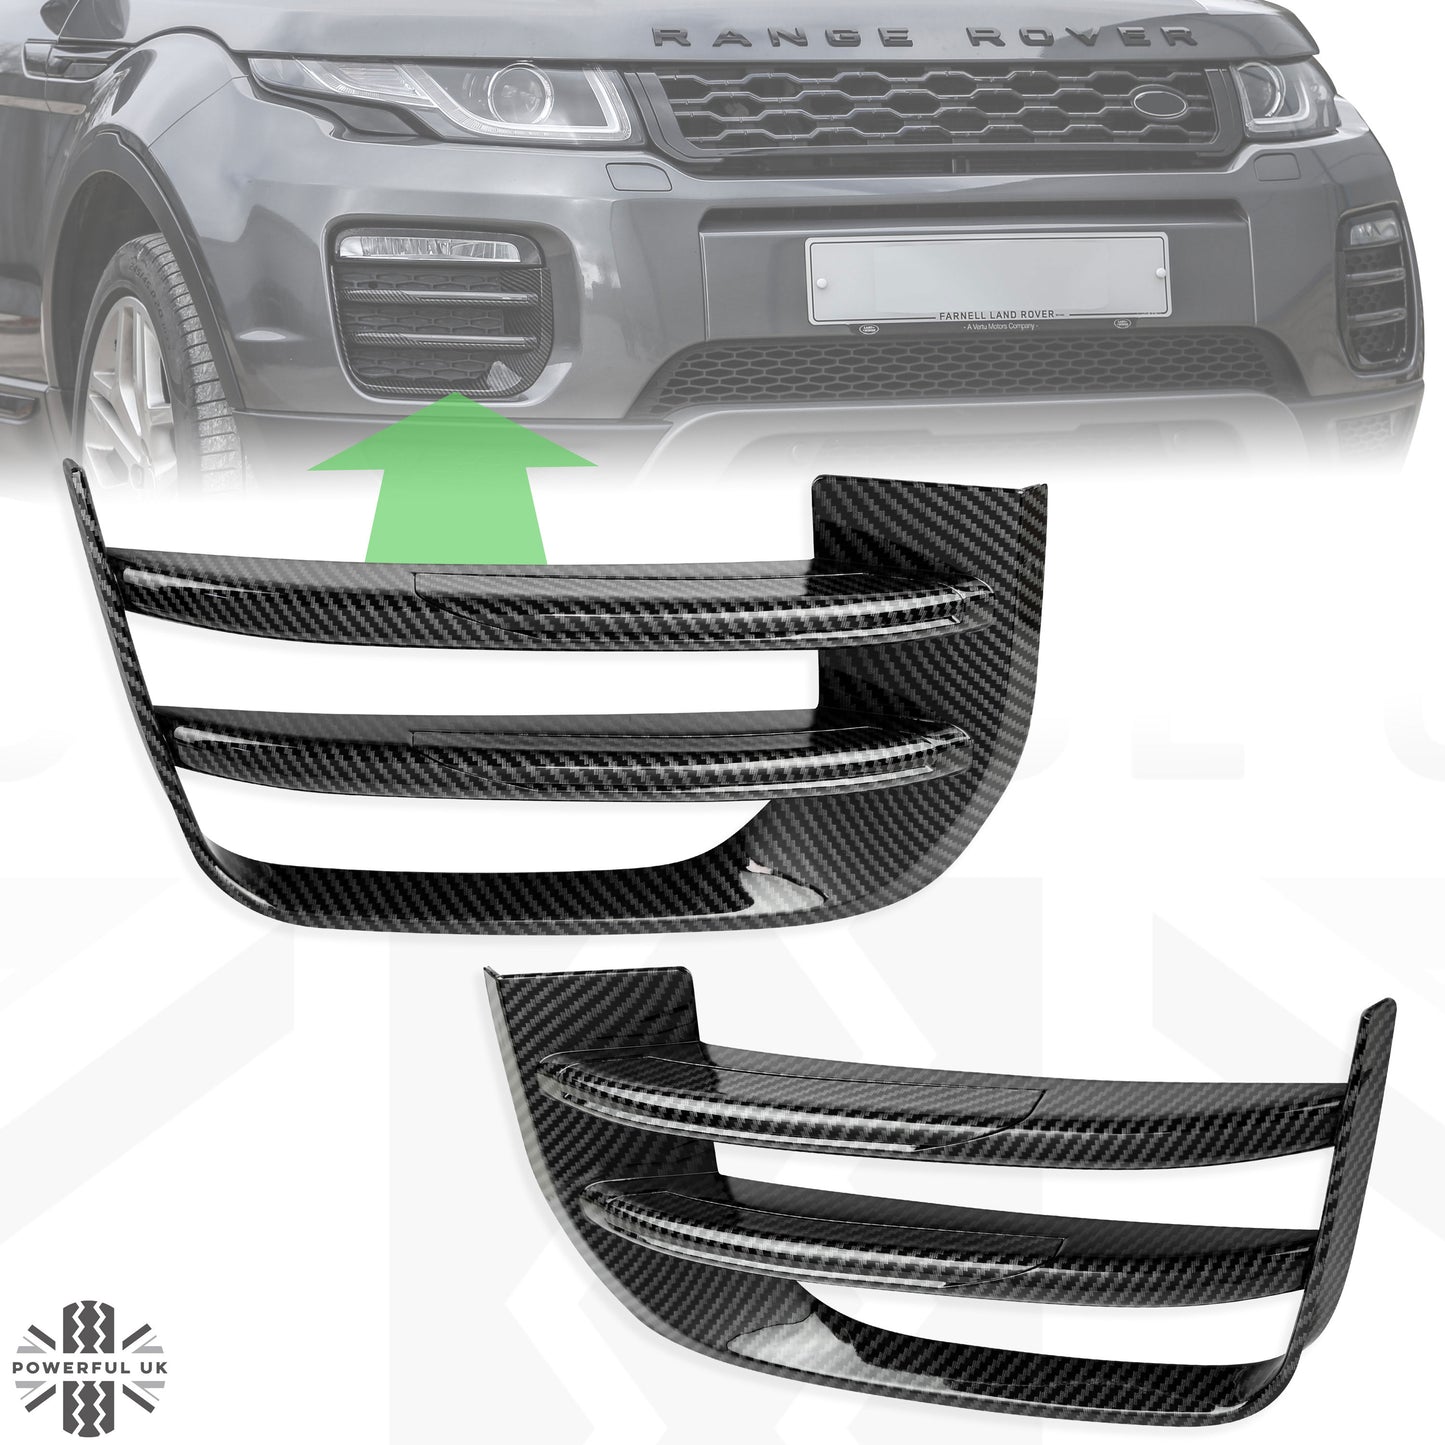 Carbon Fibre Effect Front fog Surrounds wih Carbon Fibre Effect Inserts for Range Rover Evoque SE & HSE (2016-19)